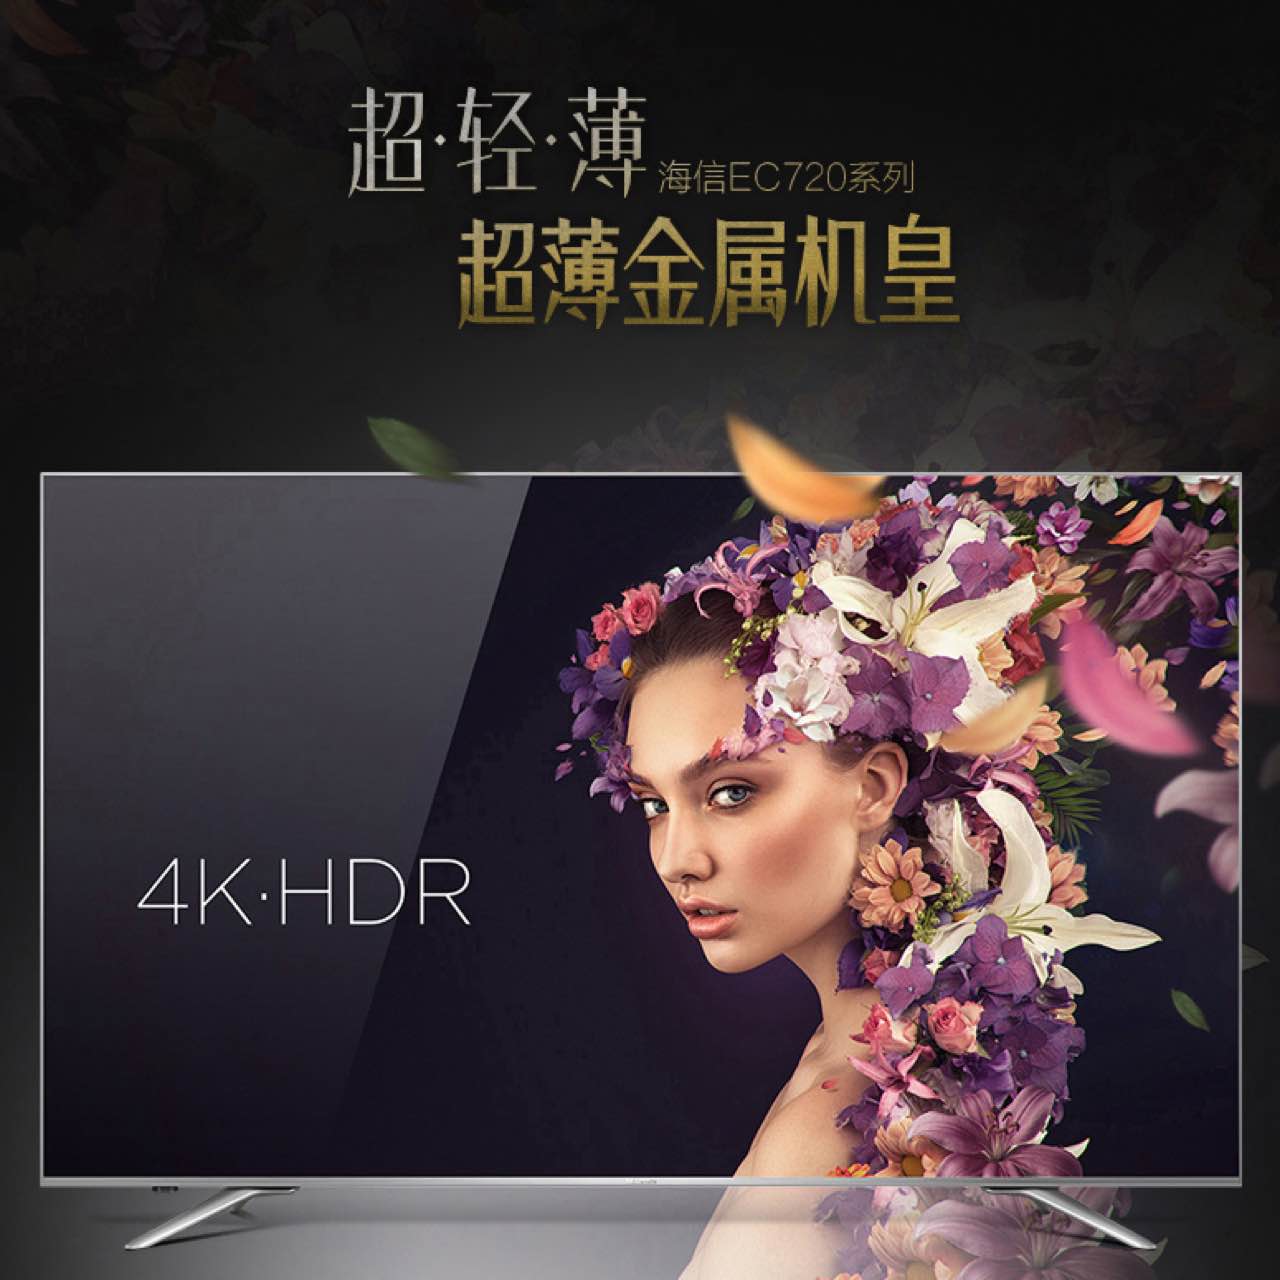 Hisense/海信 LED55EC720US 55吋4K高清智能网络平板液晶电视机50